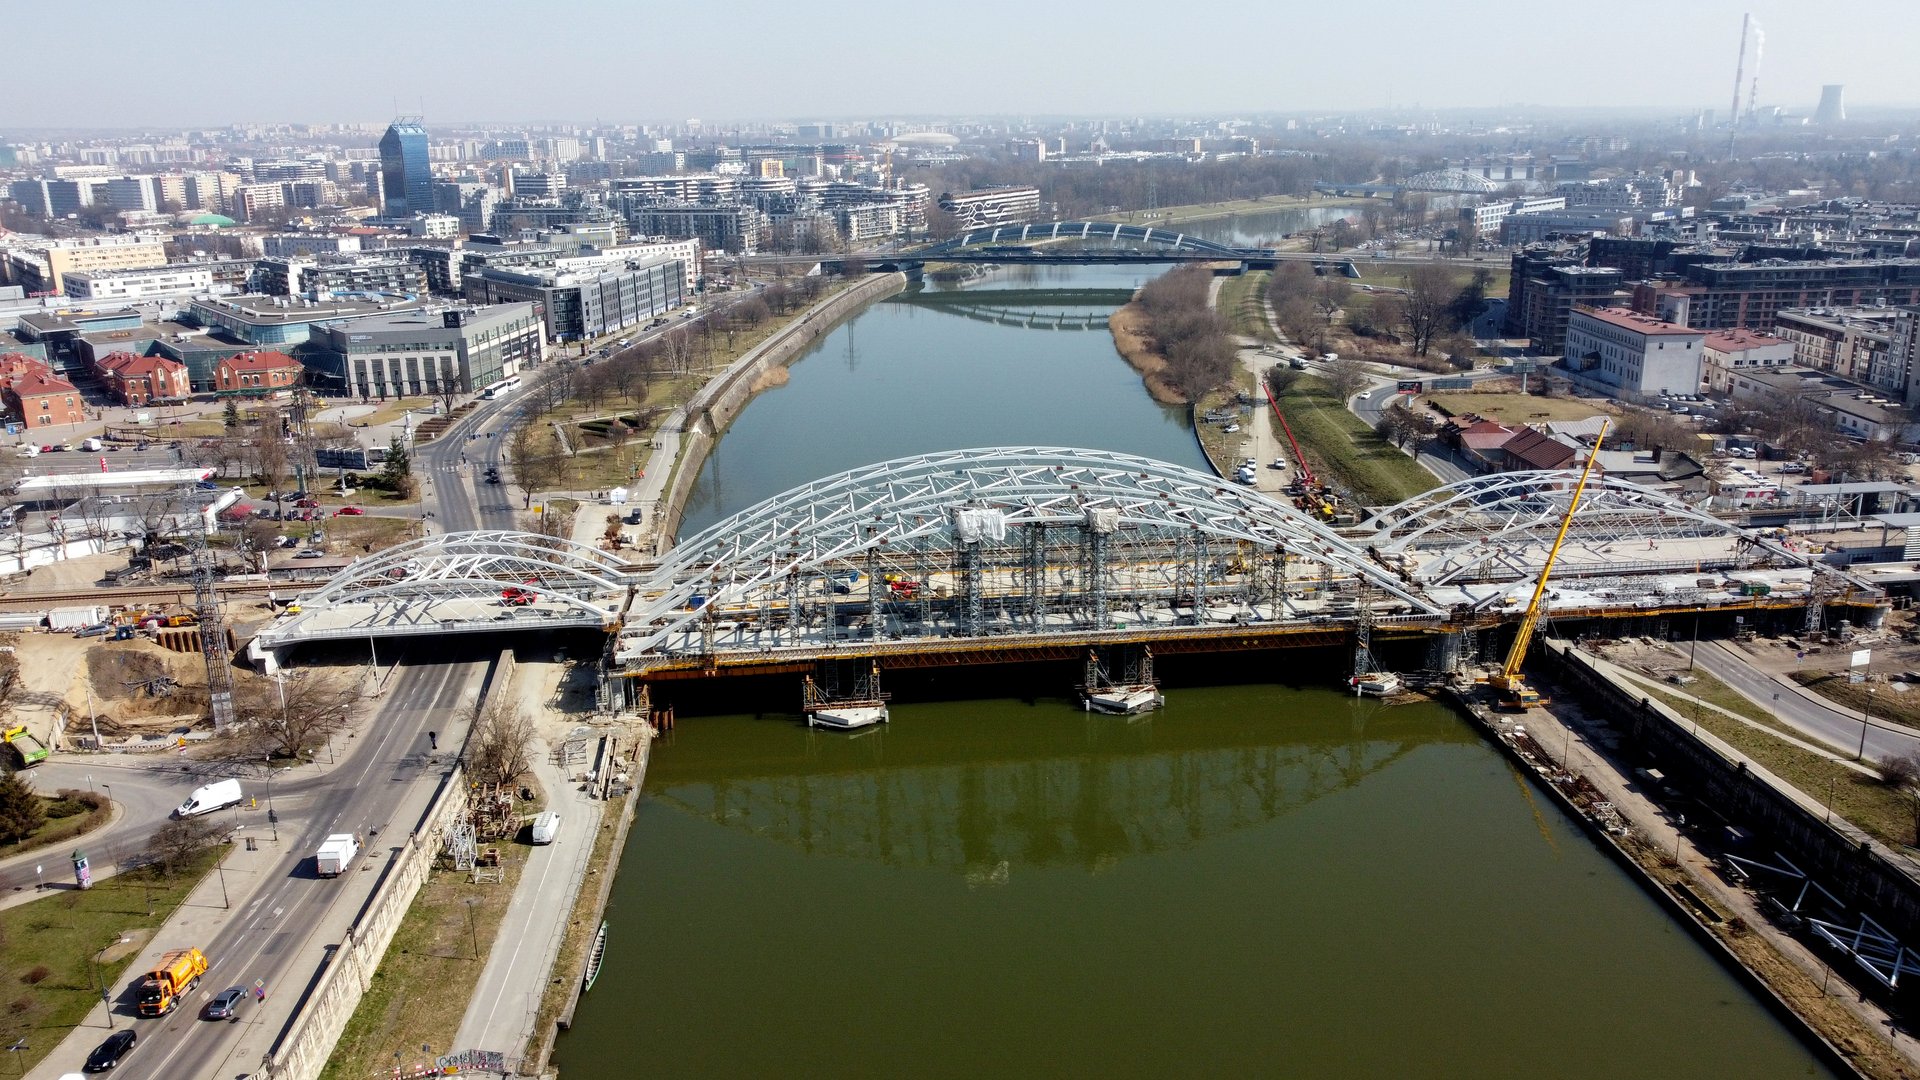 Zdjęcie przedstawia widok z lotu ptaka na nowy most kolejowy w Krakowie.